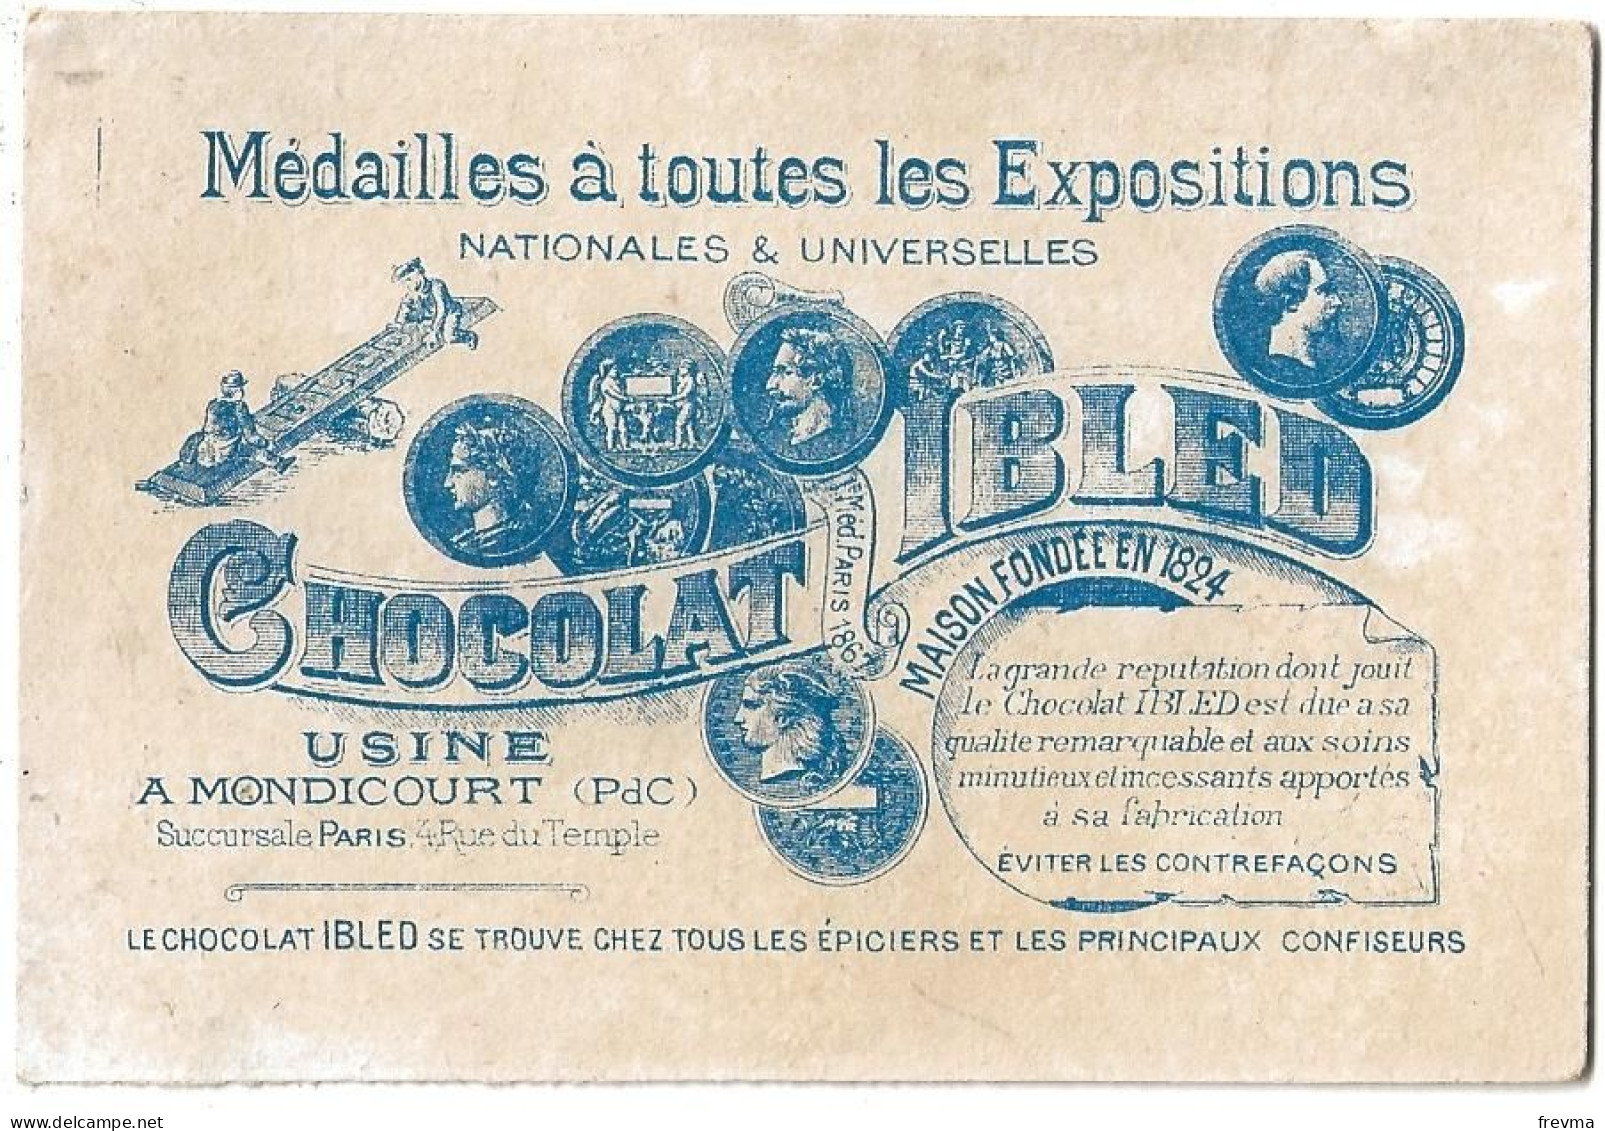 Chromos Publicitaire Chocolat Ibled Année 1900 Lenfant Et Le Maitre D'ecole - Ibled